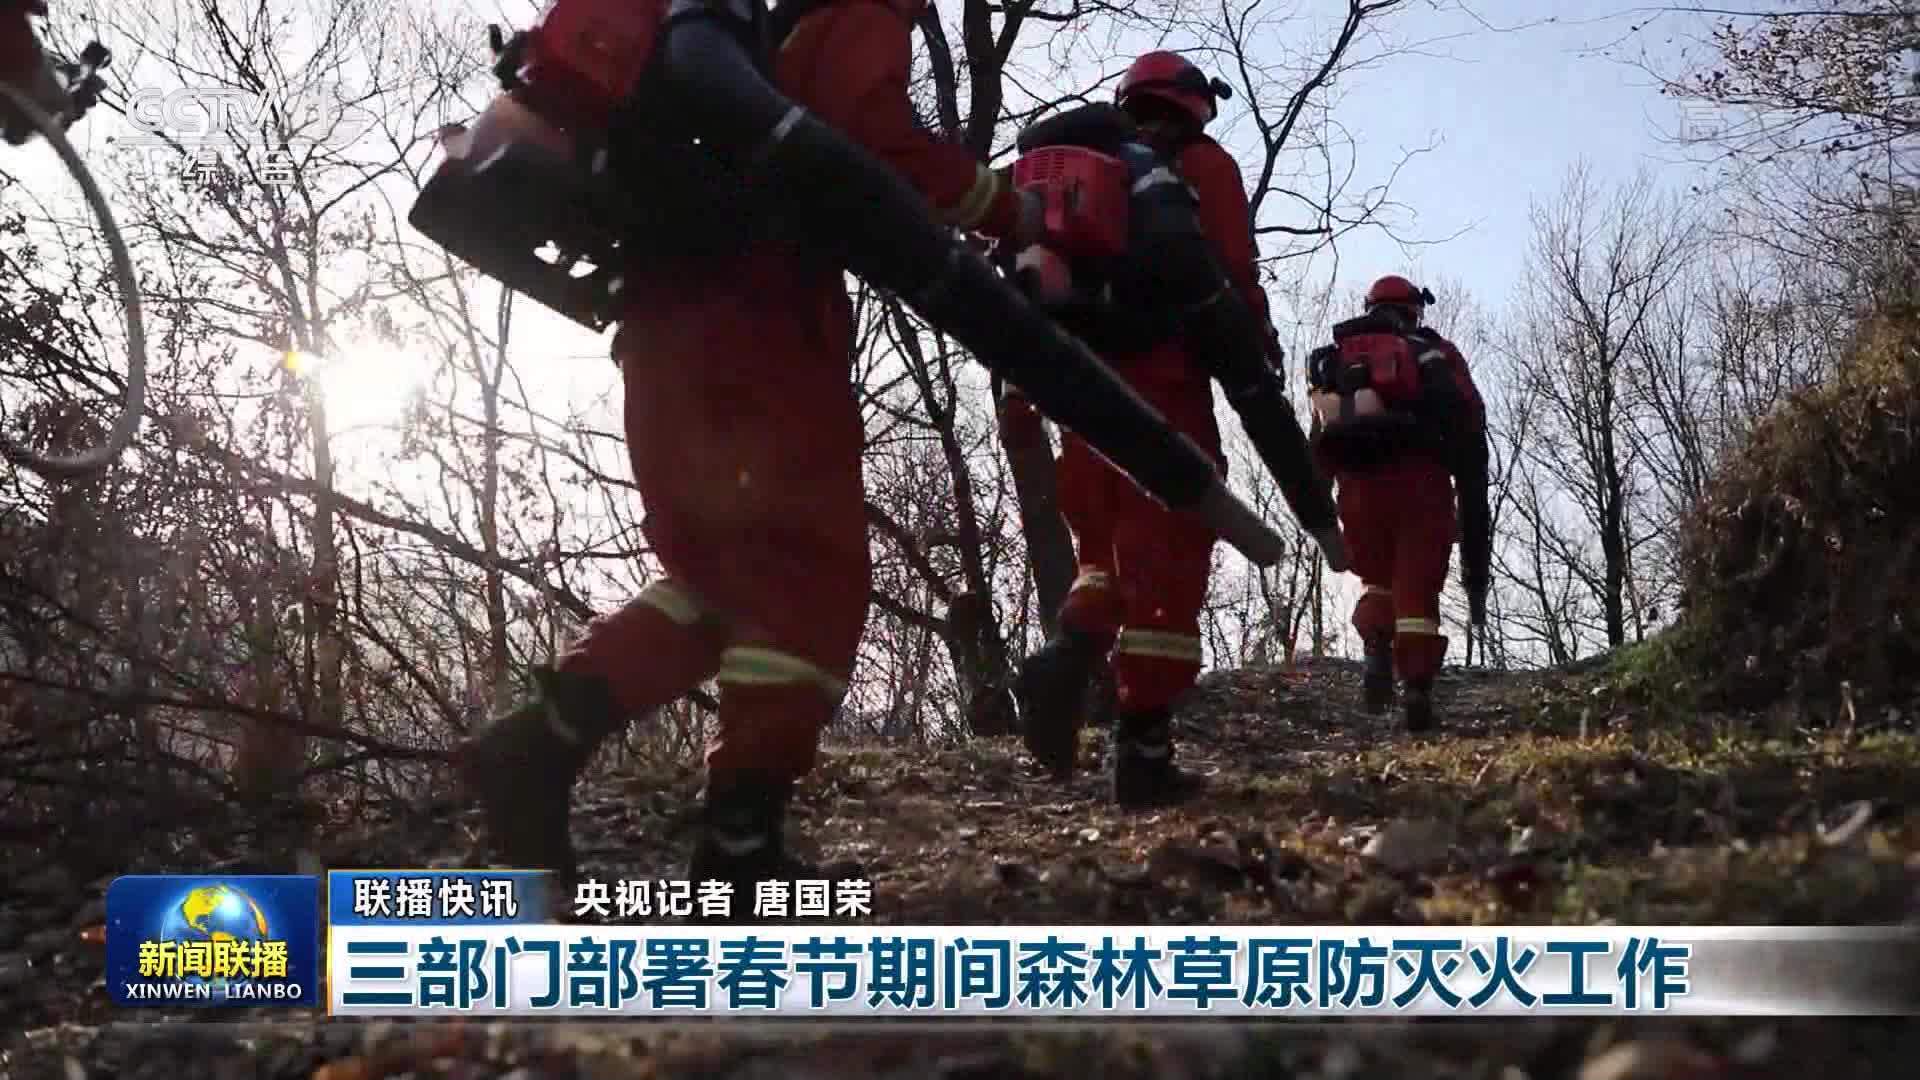 【联播快讯】三部门部署春节期间森林草原防灭火工作